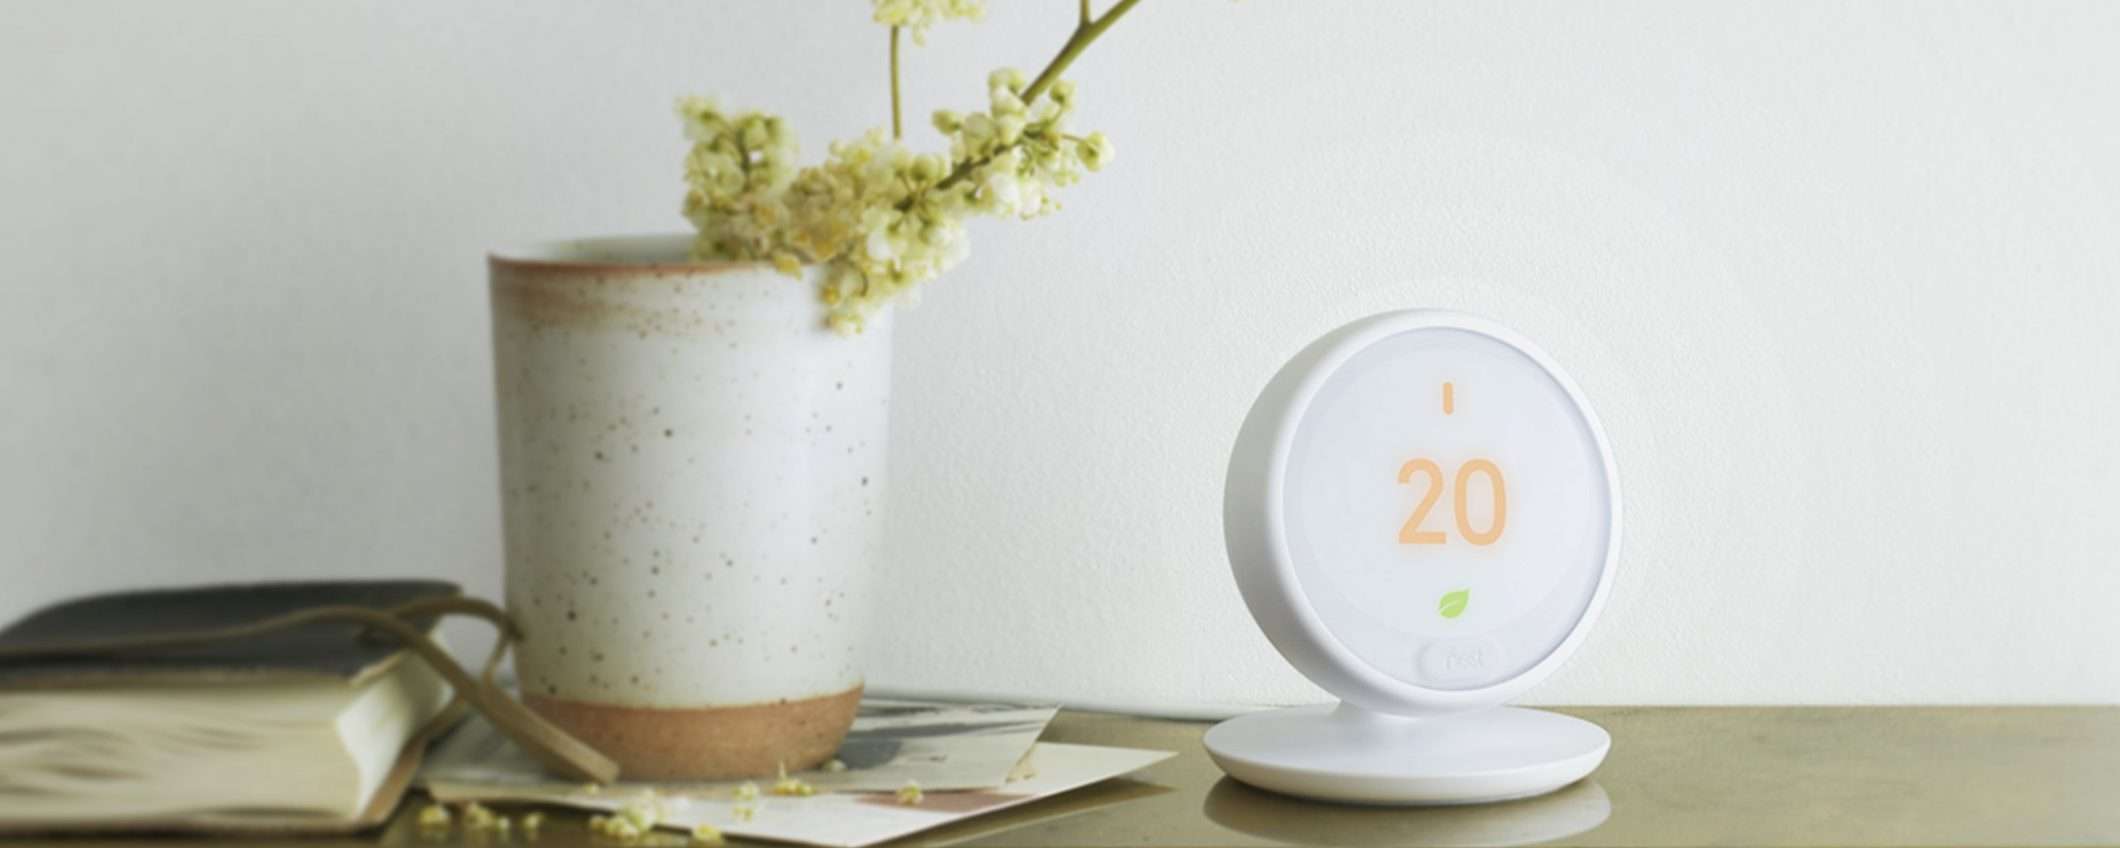 Nest Thermostat E: facilità e risparmio energetico